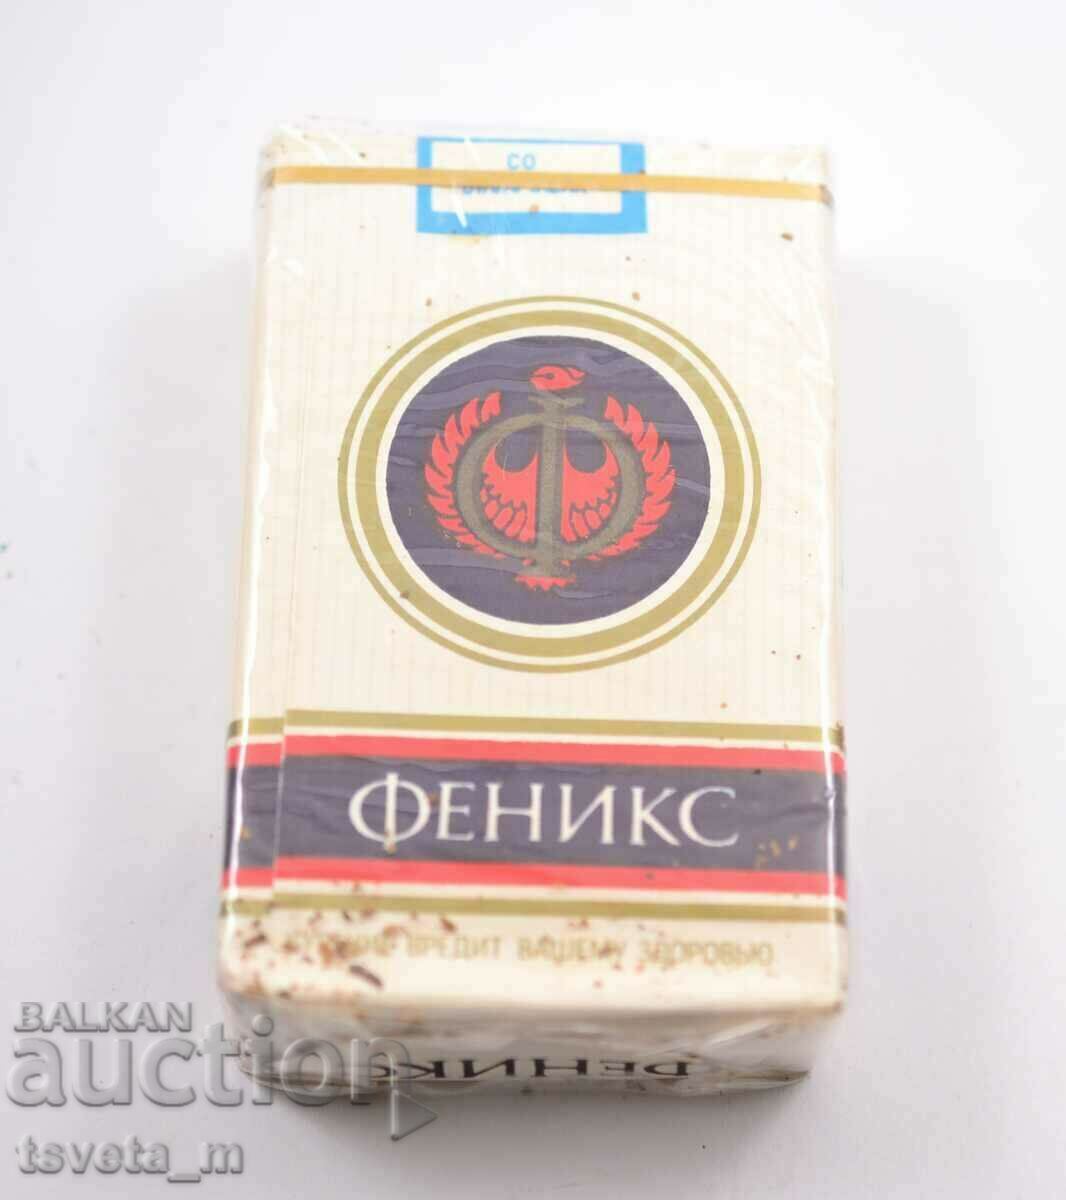 Fenix Light cigarettes sealed full package, social